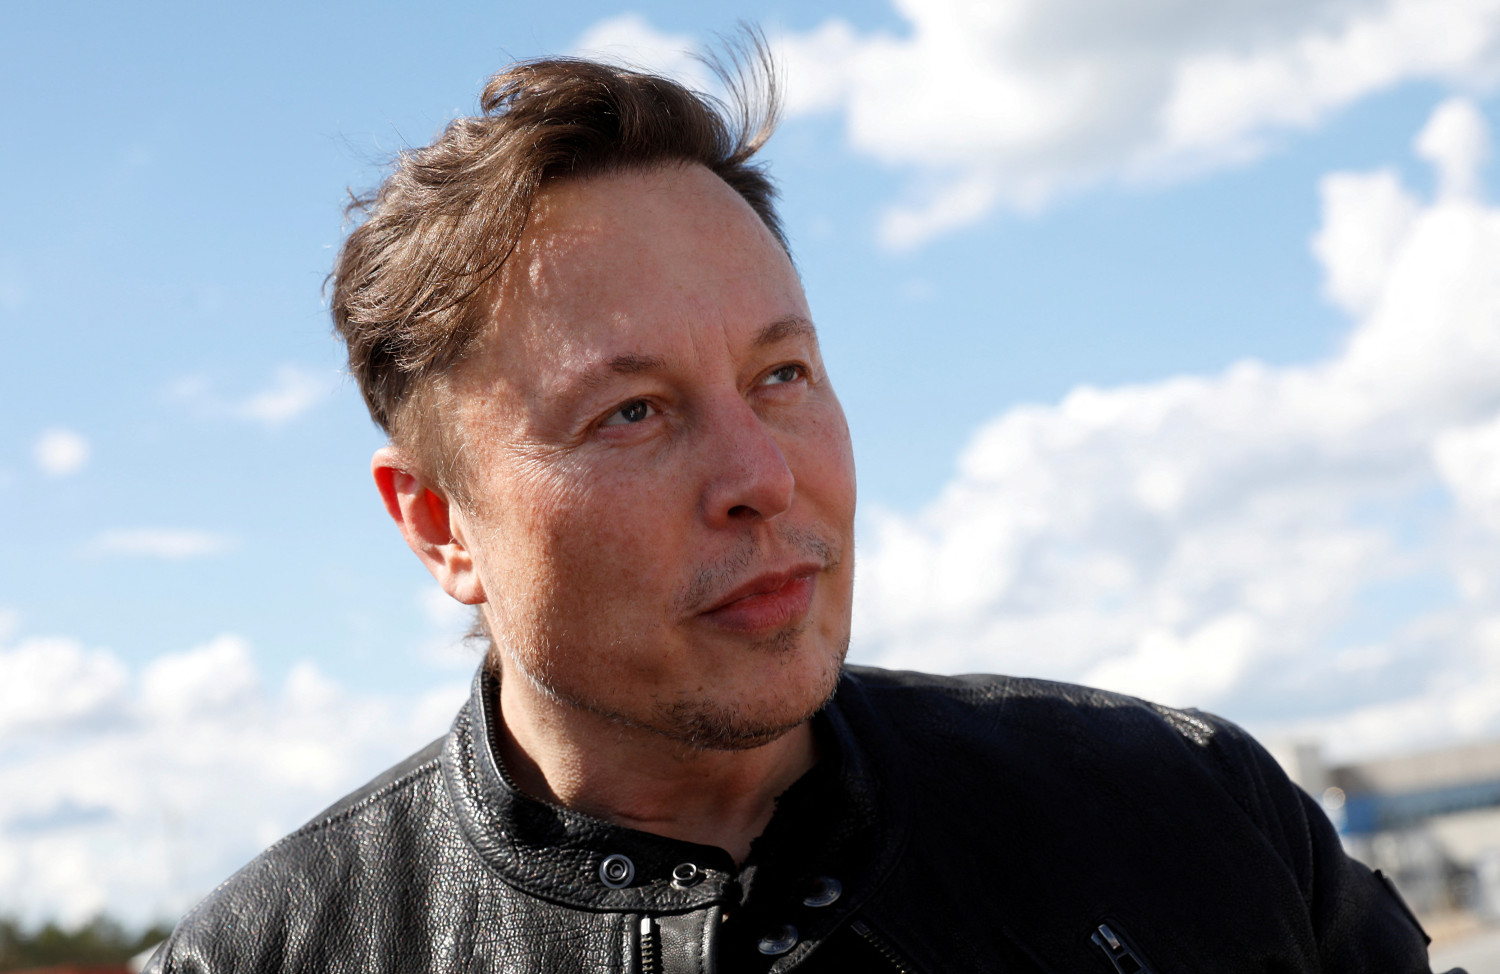 Musk alimenta su negocio: SpaceX compra un paquete publicitario de Starlink en Twitter